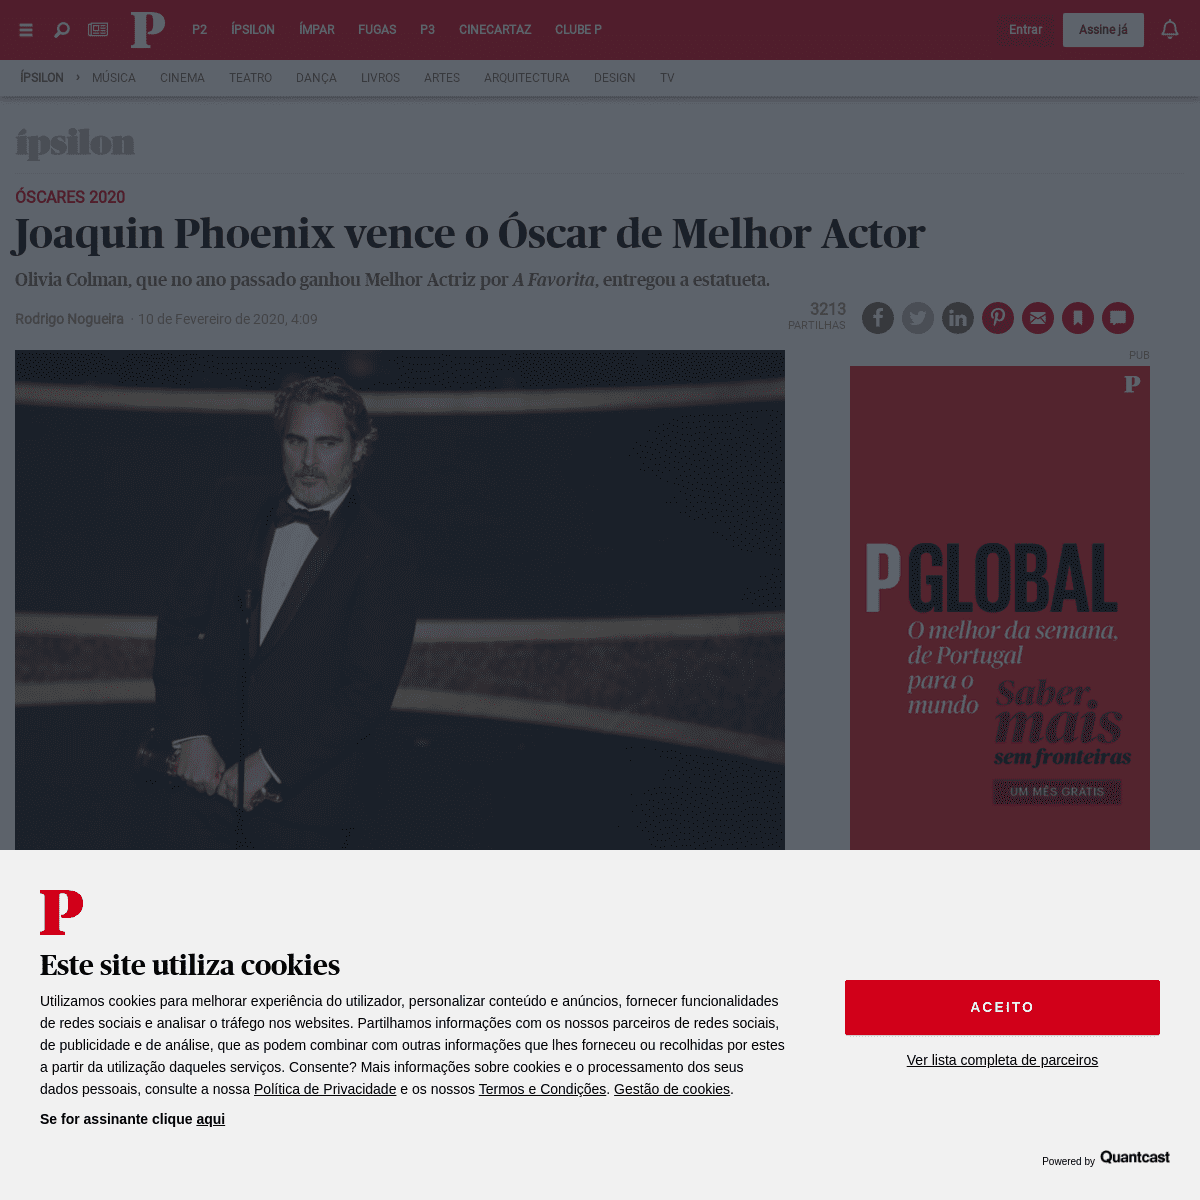 A complete backup of www.publico.pt/2020/02/10/culturaipsilon/noticia/joaquin-phoenix-vence-oscar-melhor-actor-principal-1903488